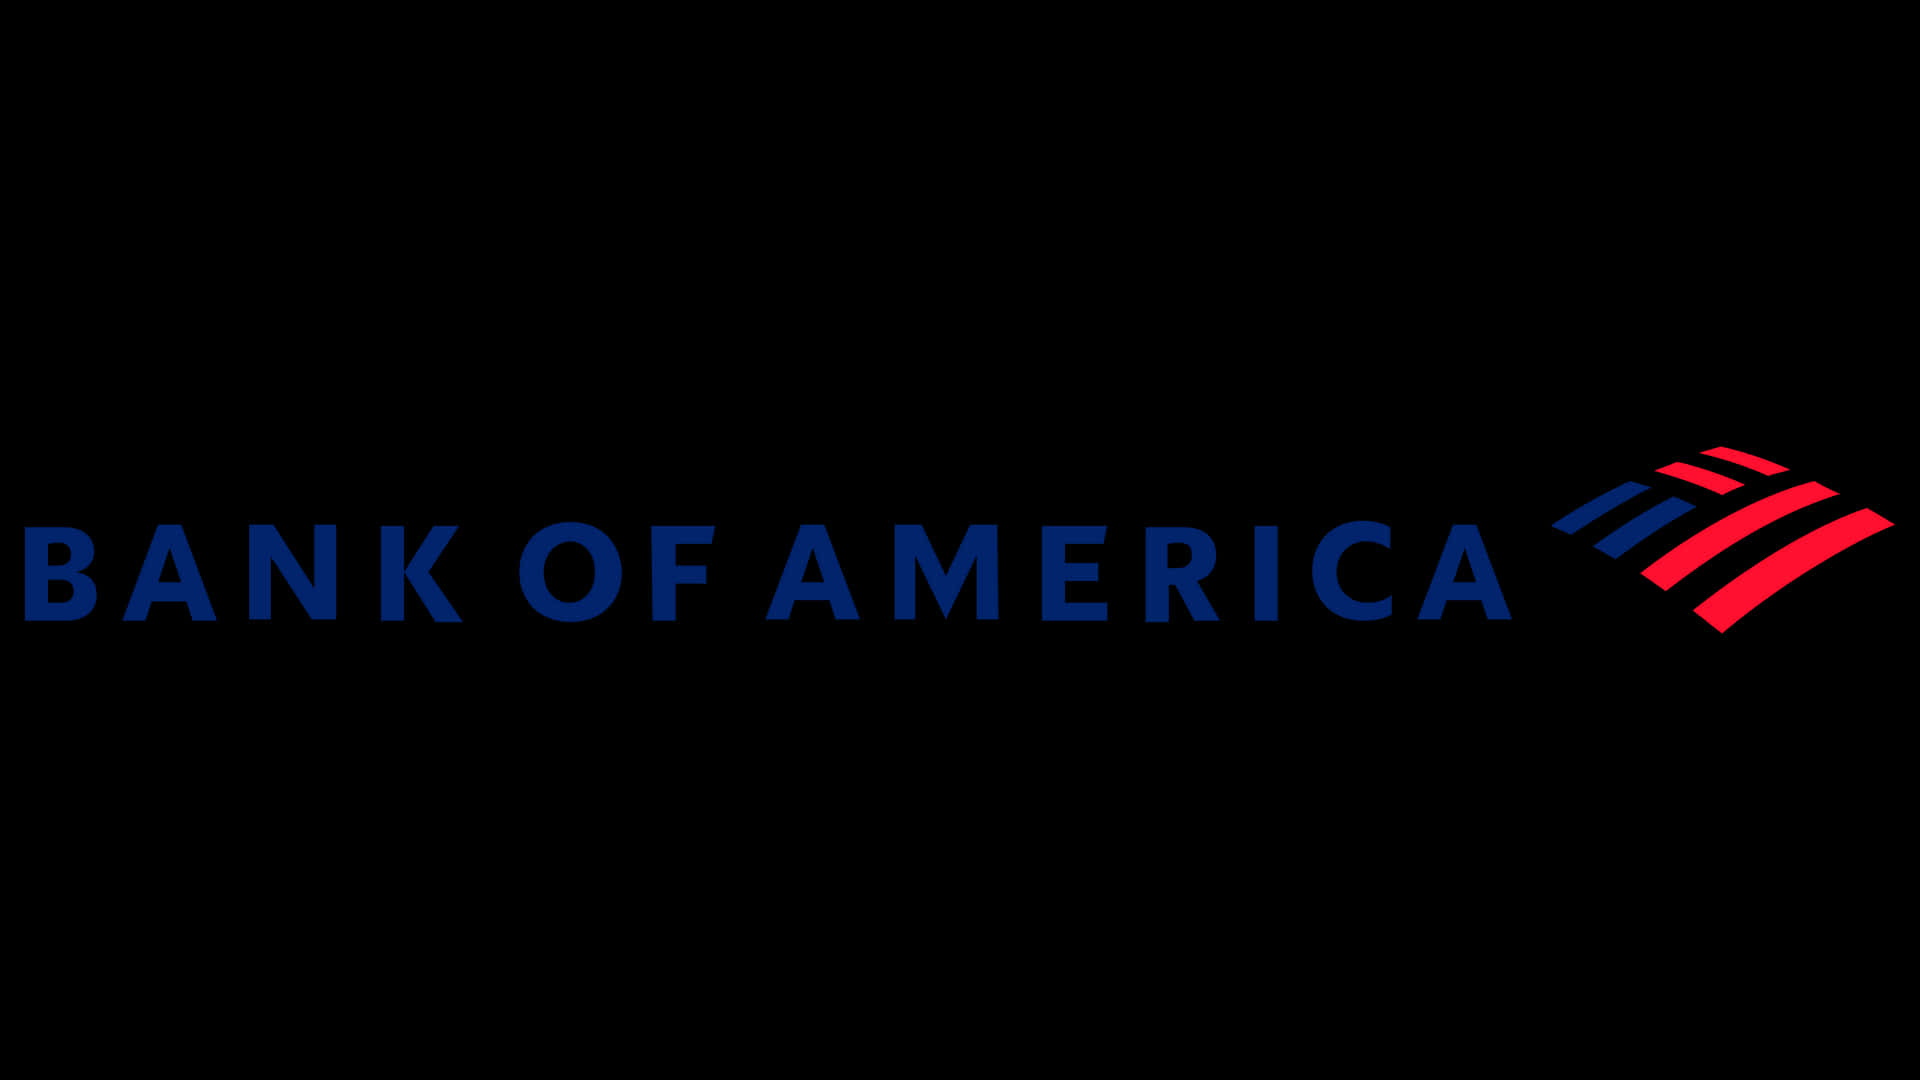 Bankof America: Smart Bankering.